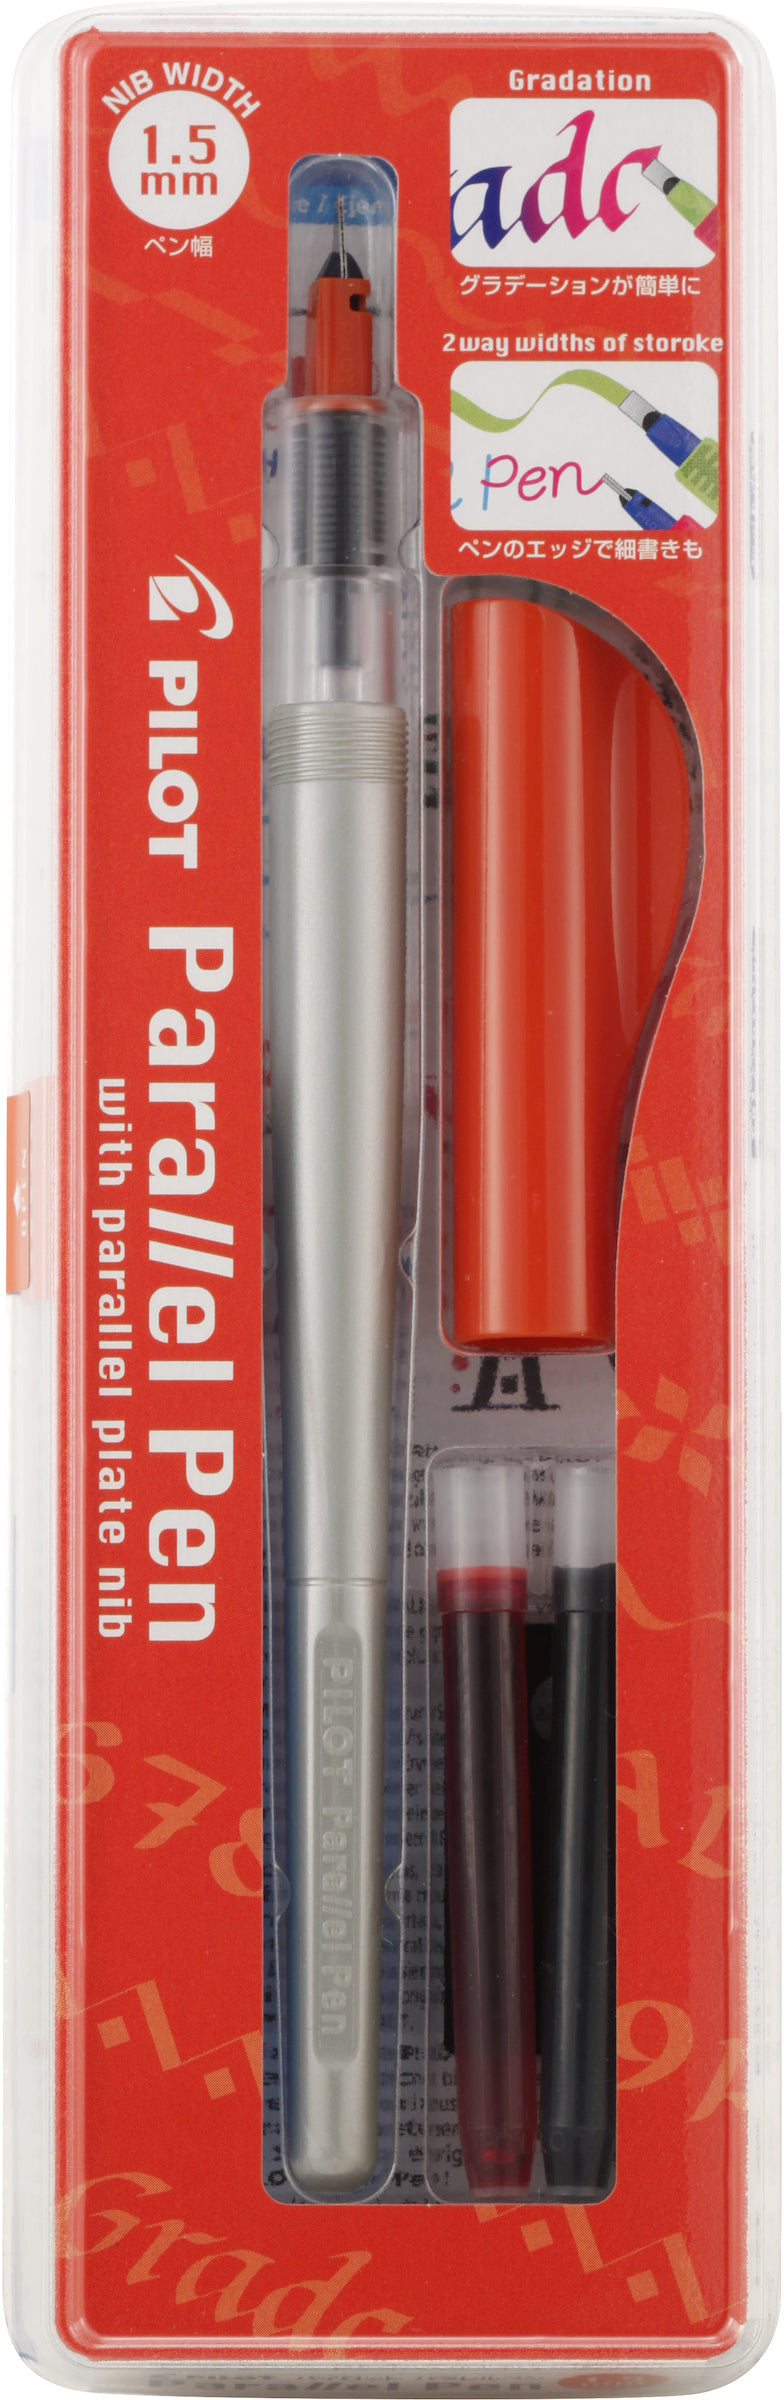 Pilot Parallel Pen Orange, 2.4mm – FPnibs